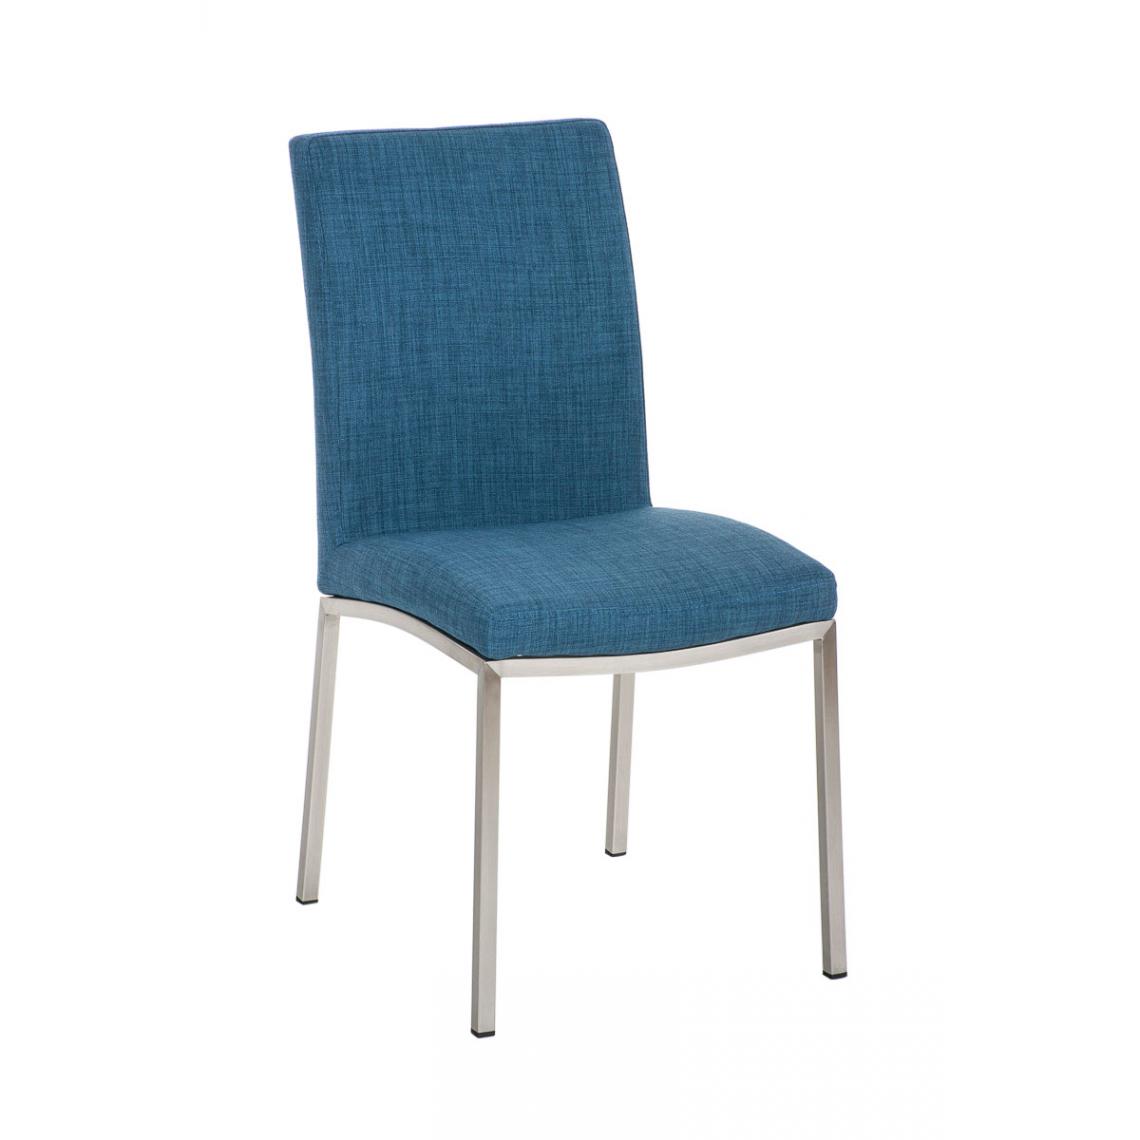 Icaverne - Moderne Chaise de salle à manger categorie Caracas FABRIC couleur bleu - Chaises